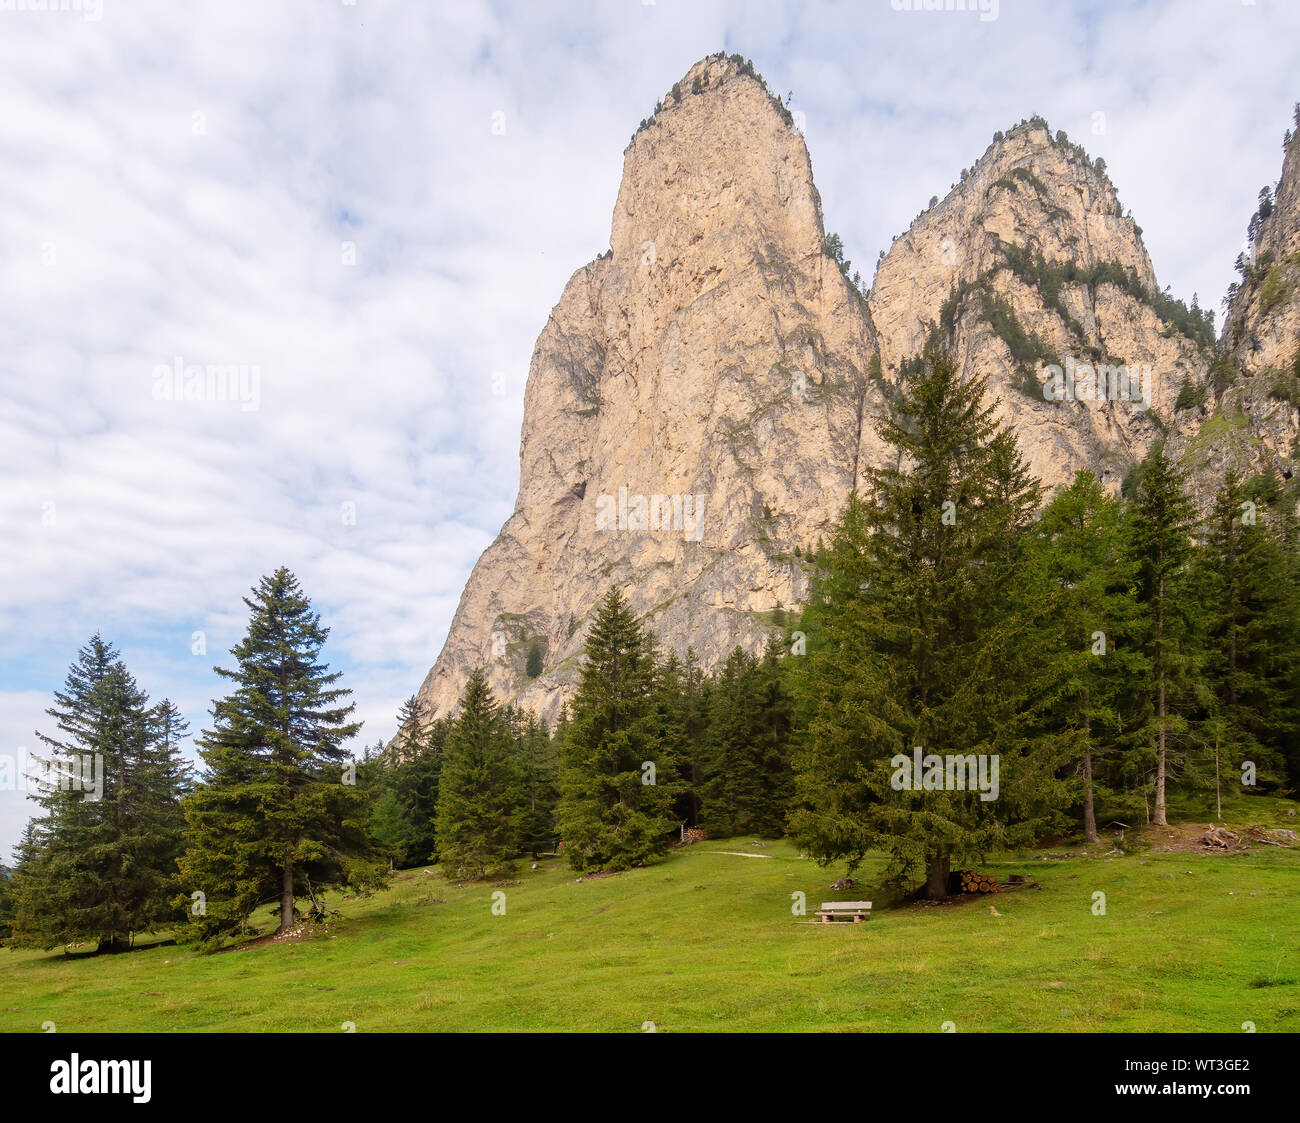 Dolomiten Alpen im Hintergrund. Rocky Mountains in der Nähe von Selva di Val Gardena, Südtirol, Südtirol. Keine Personen, ideal Hintergrund. Stockfoto